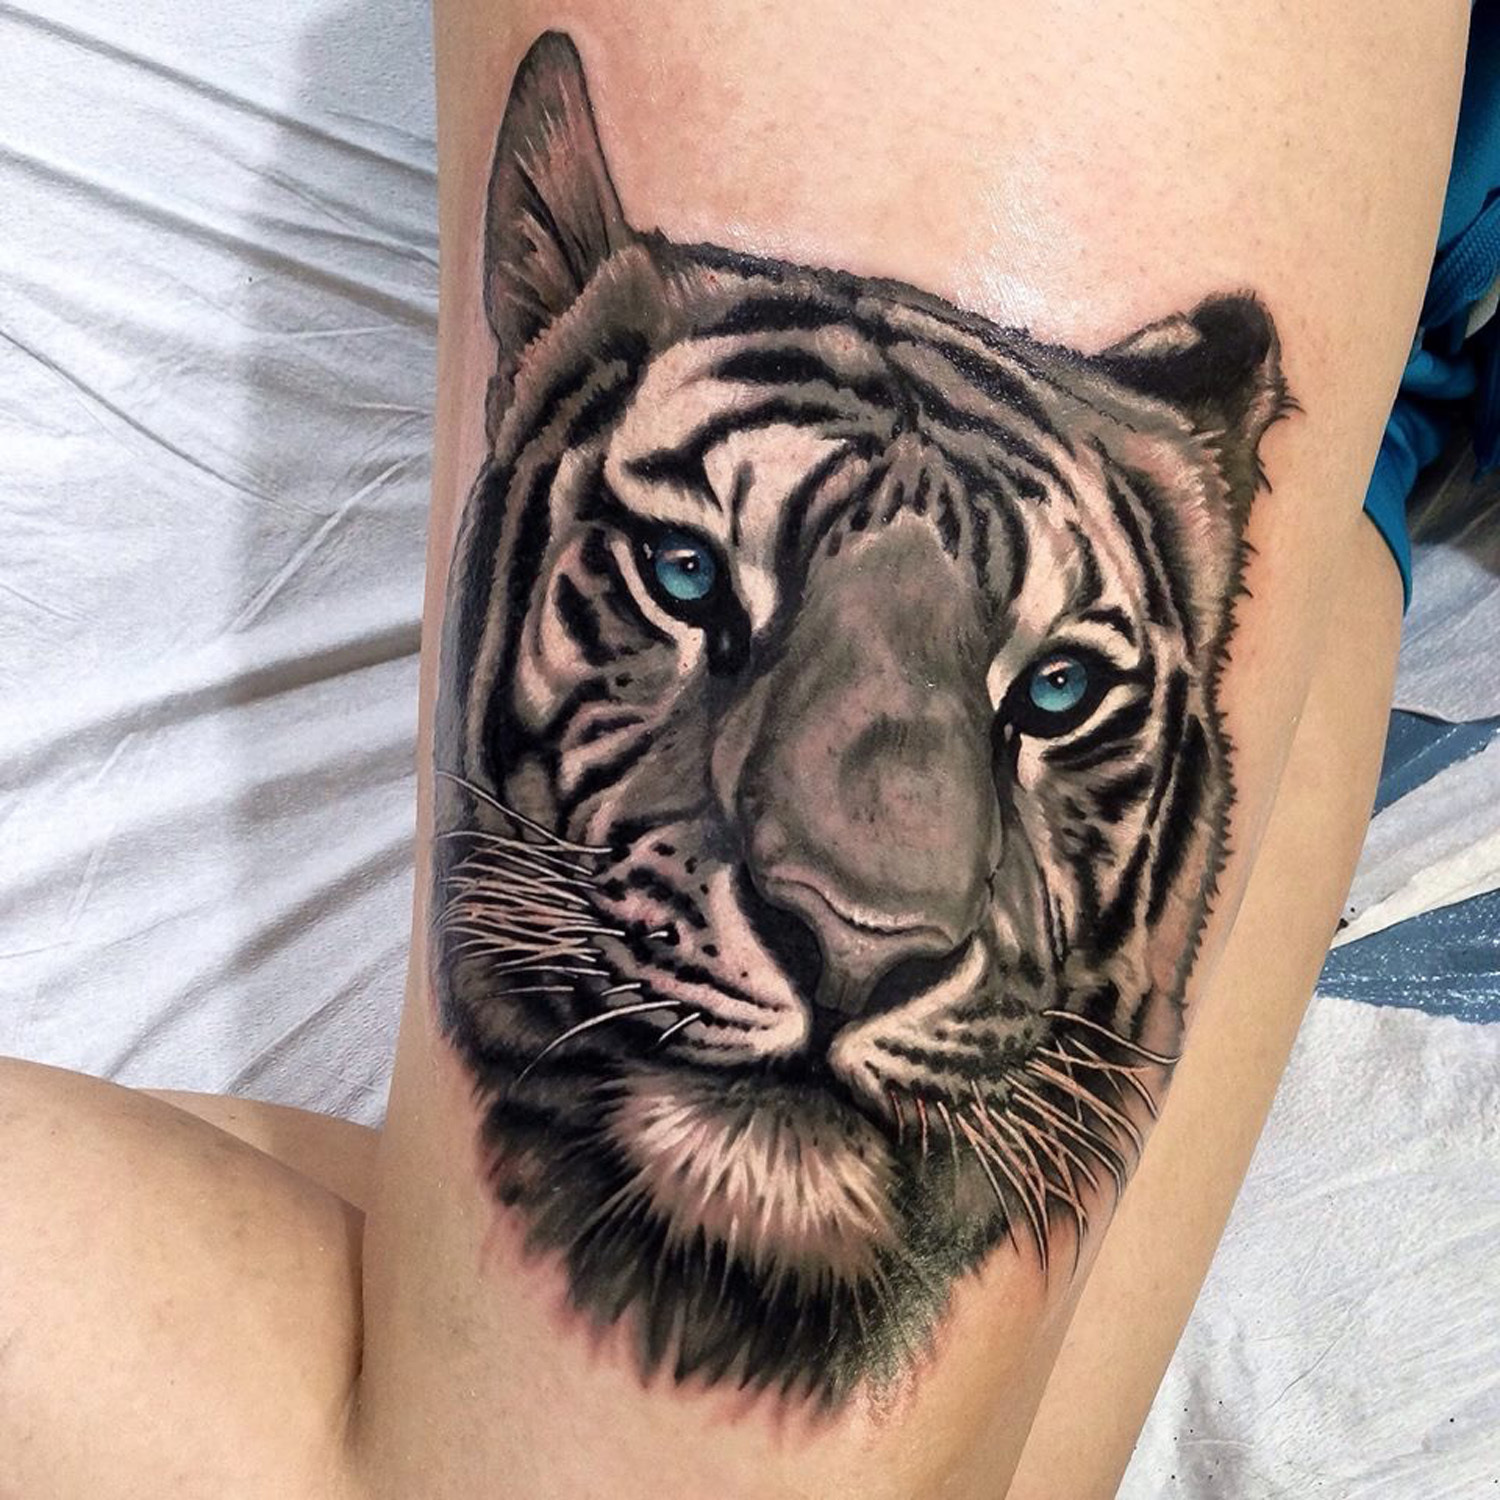 Tiger realism tattoo